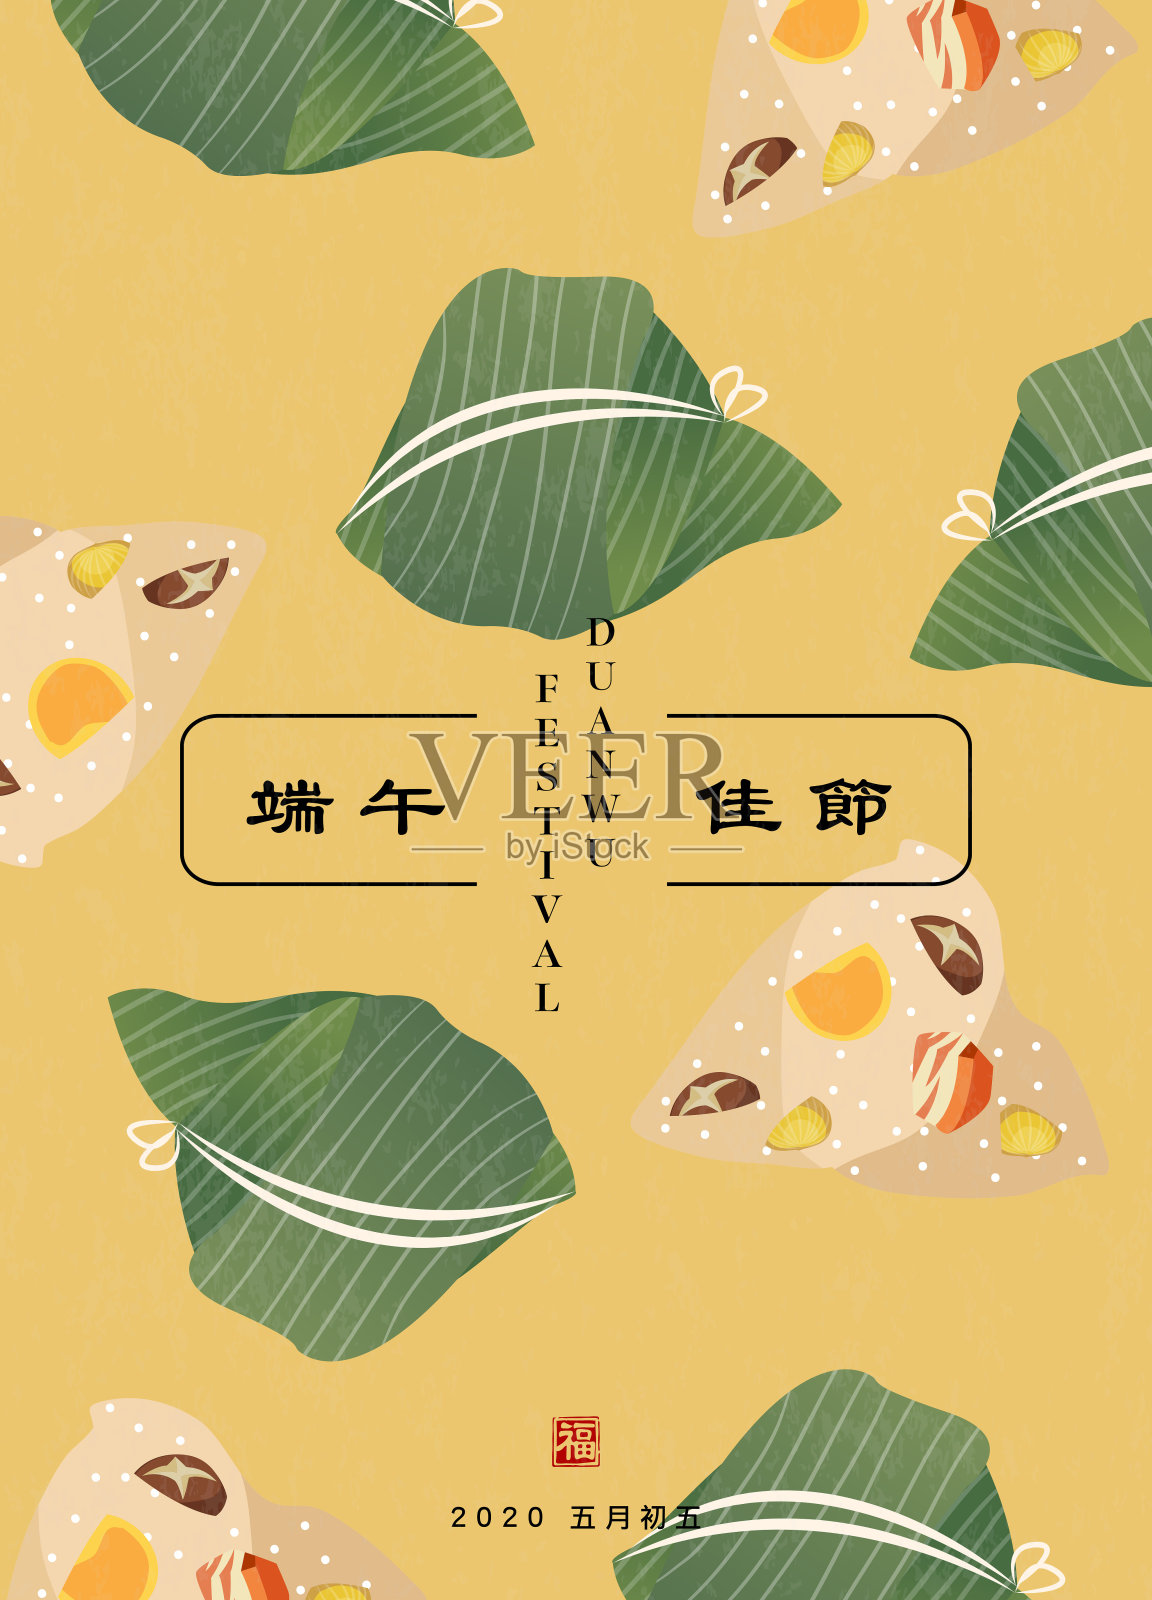 端午节快乐背景模板传统食物粽子图案海报。中文翻译:5月5日端午与祝福设计模板素材